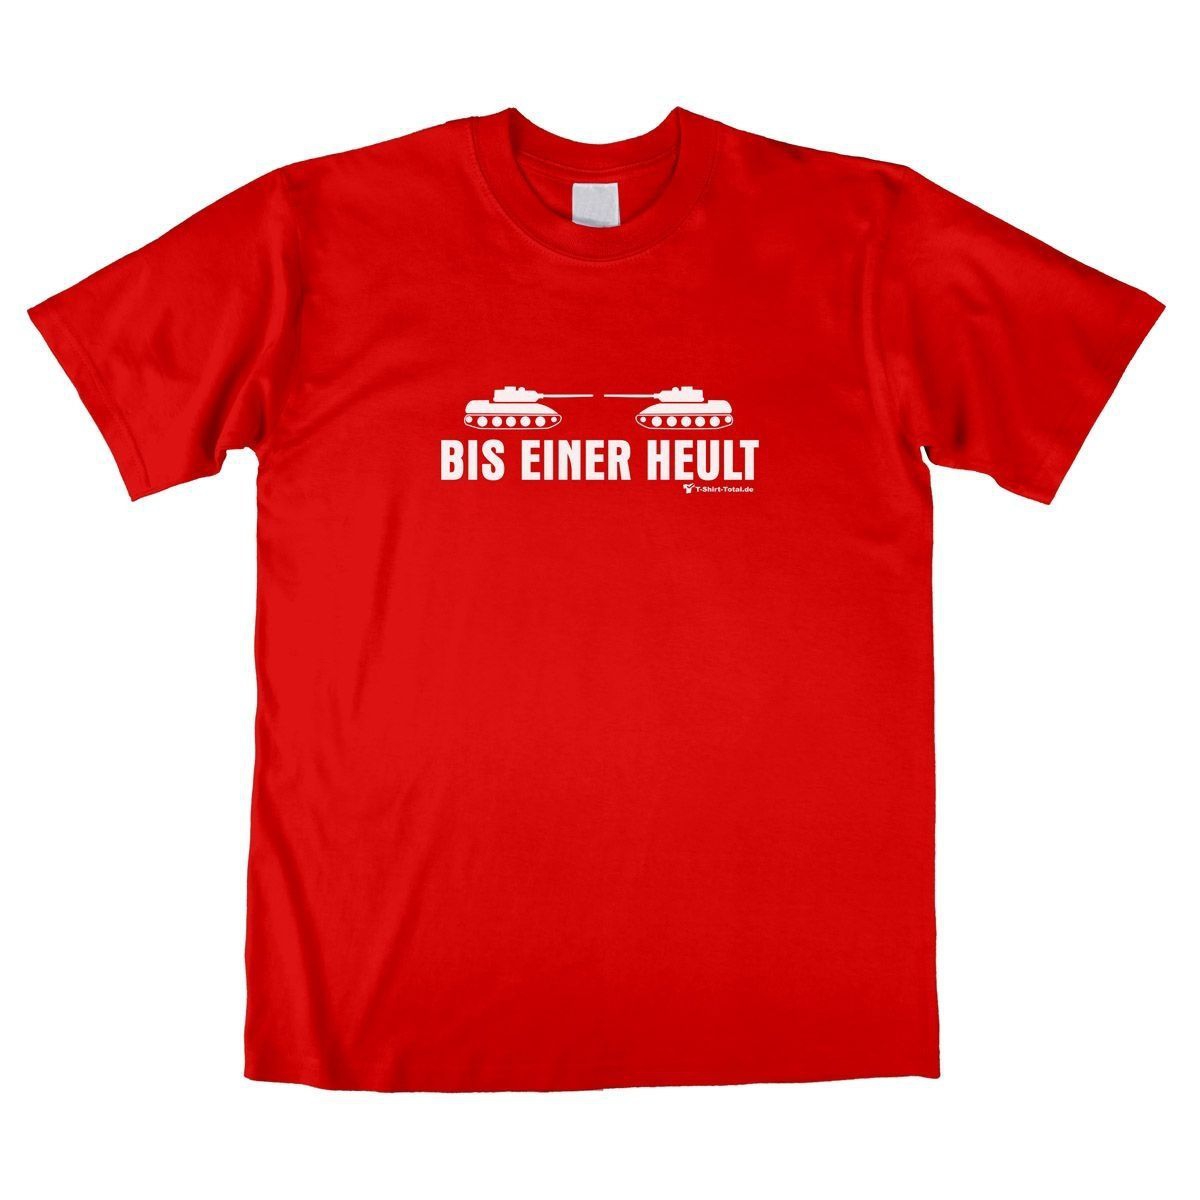 Bis einer heult Unisex T-Shirt rot Small